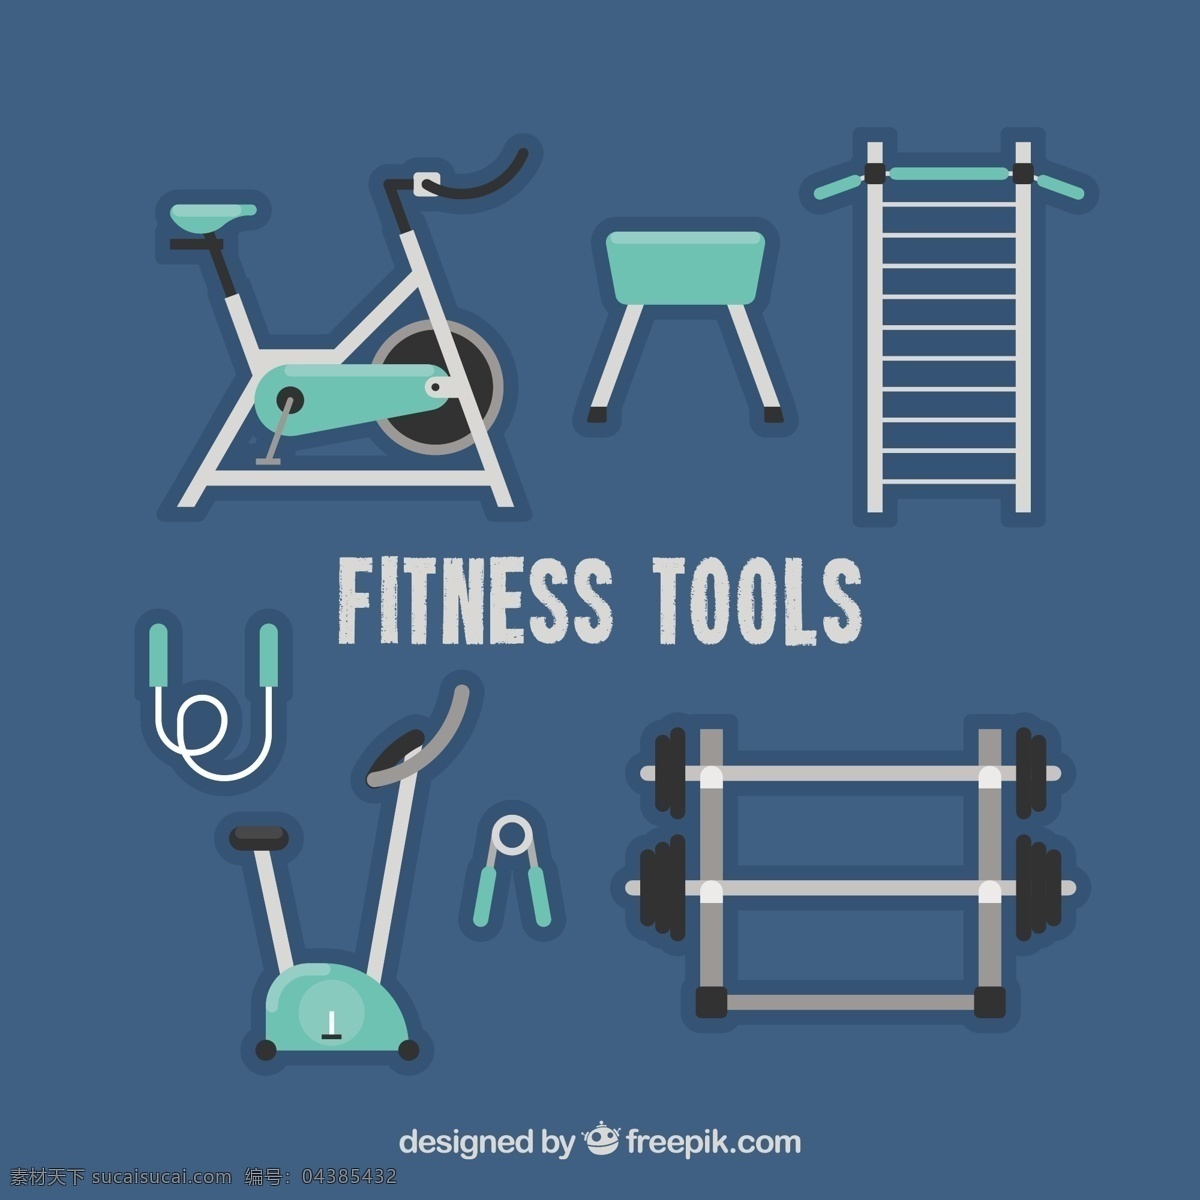 平面设计 中 健身器材 运动 健身 自行车 健身房 平板 鞋 绳 网球 球 健康 元素 训练 体重